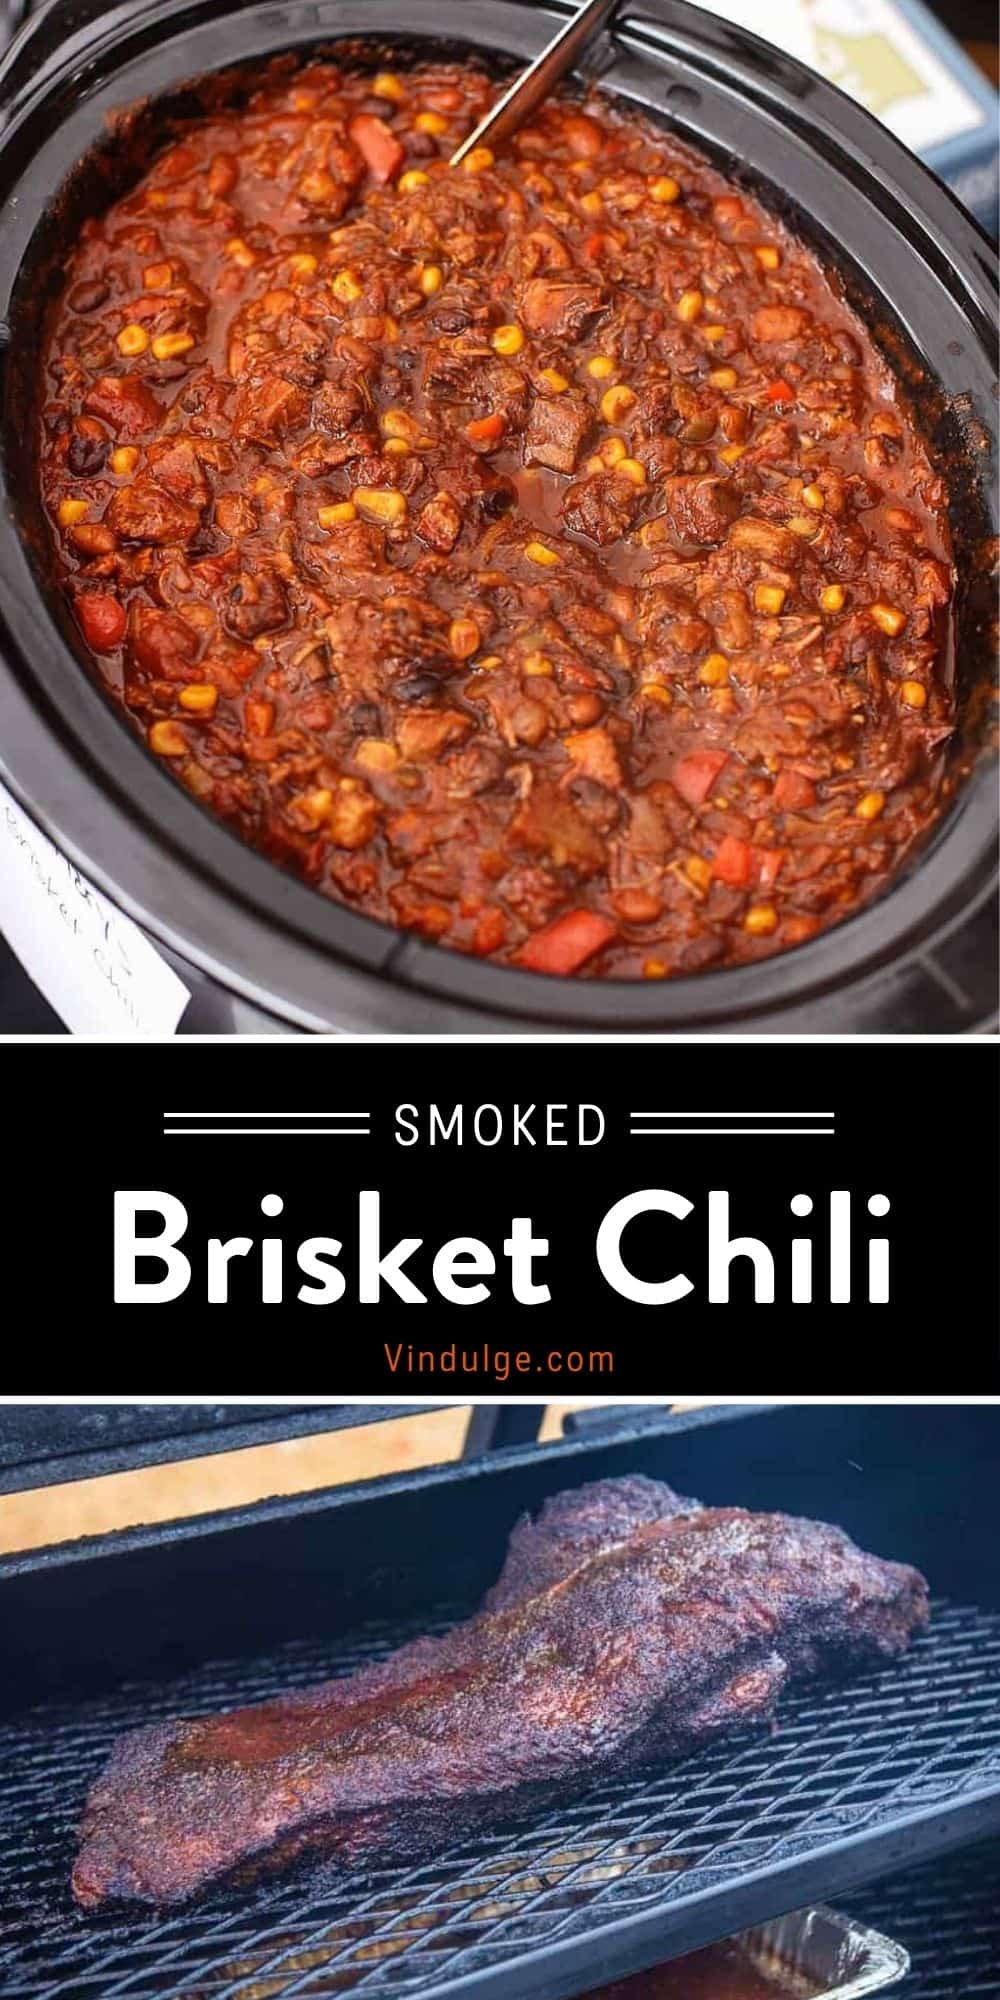 Smoked Brisket Chili (recipe and video) - Vindulge